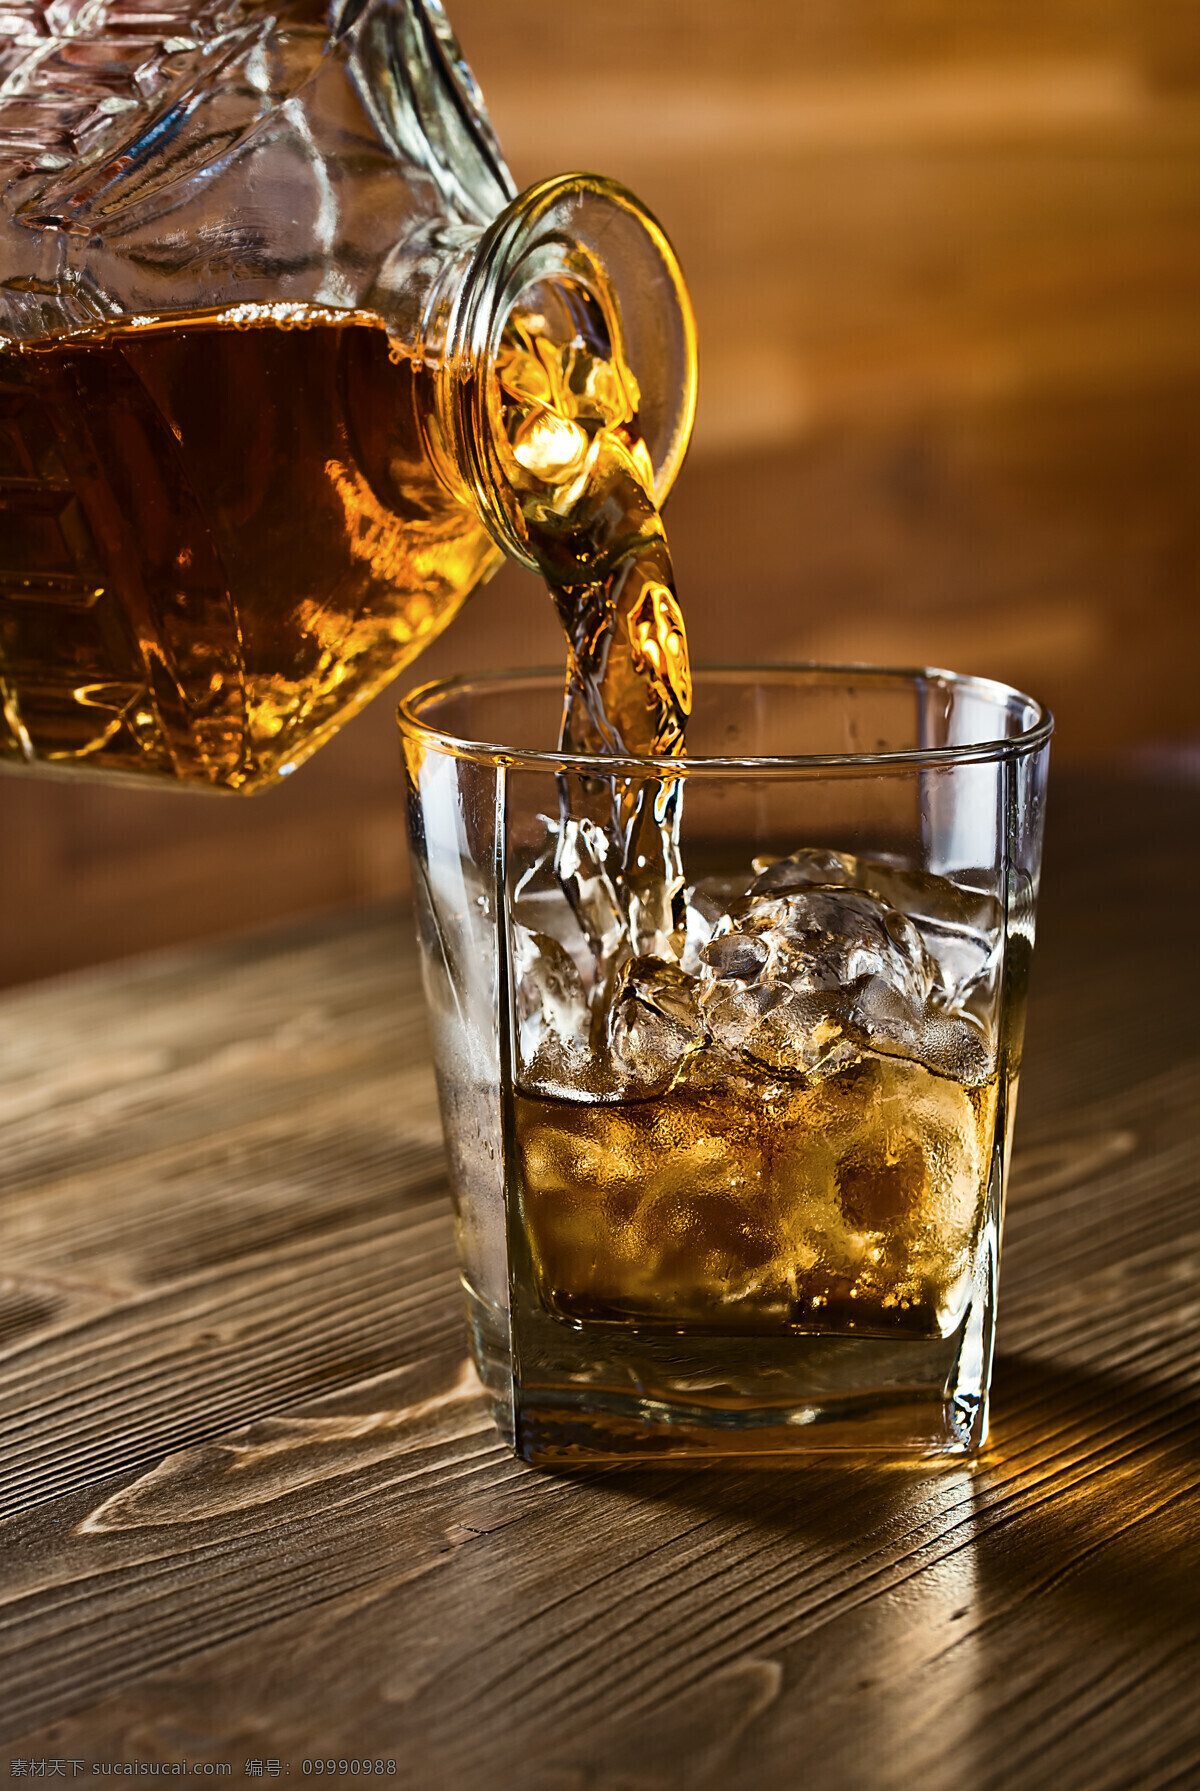 威士忌酒 威士忌 冰块 酒液 烈酒 酒杯 玻璃杯子 休闲饮品 餐饮美食 饮料酒水